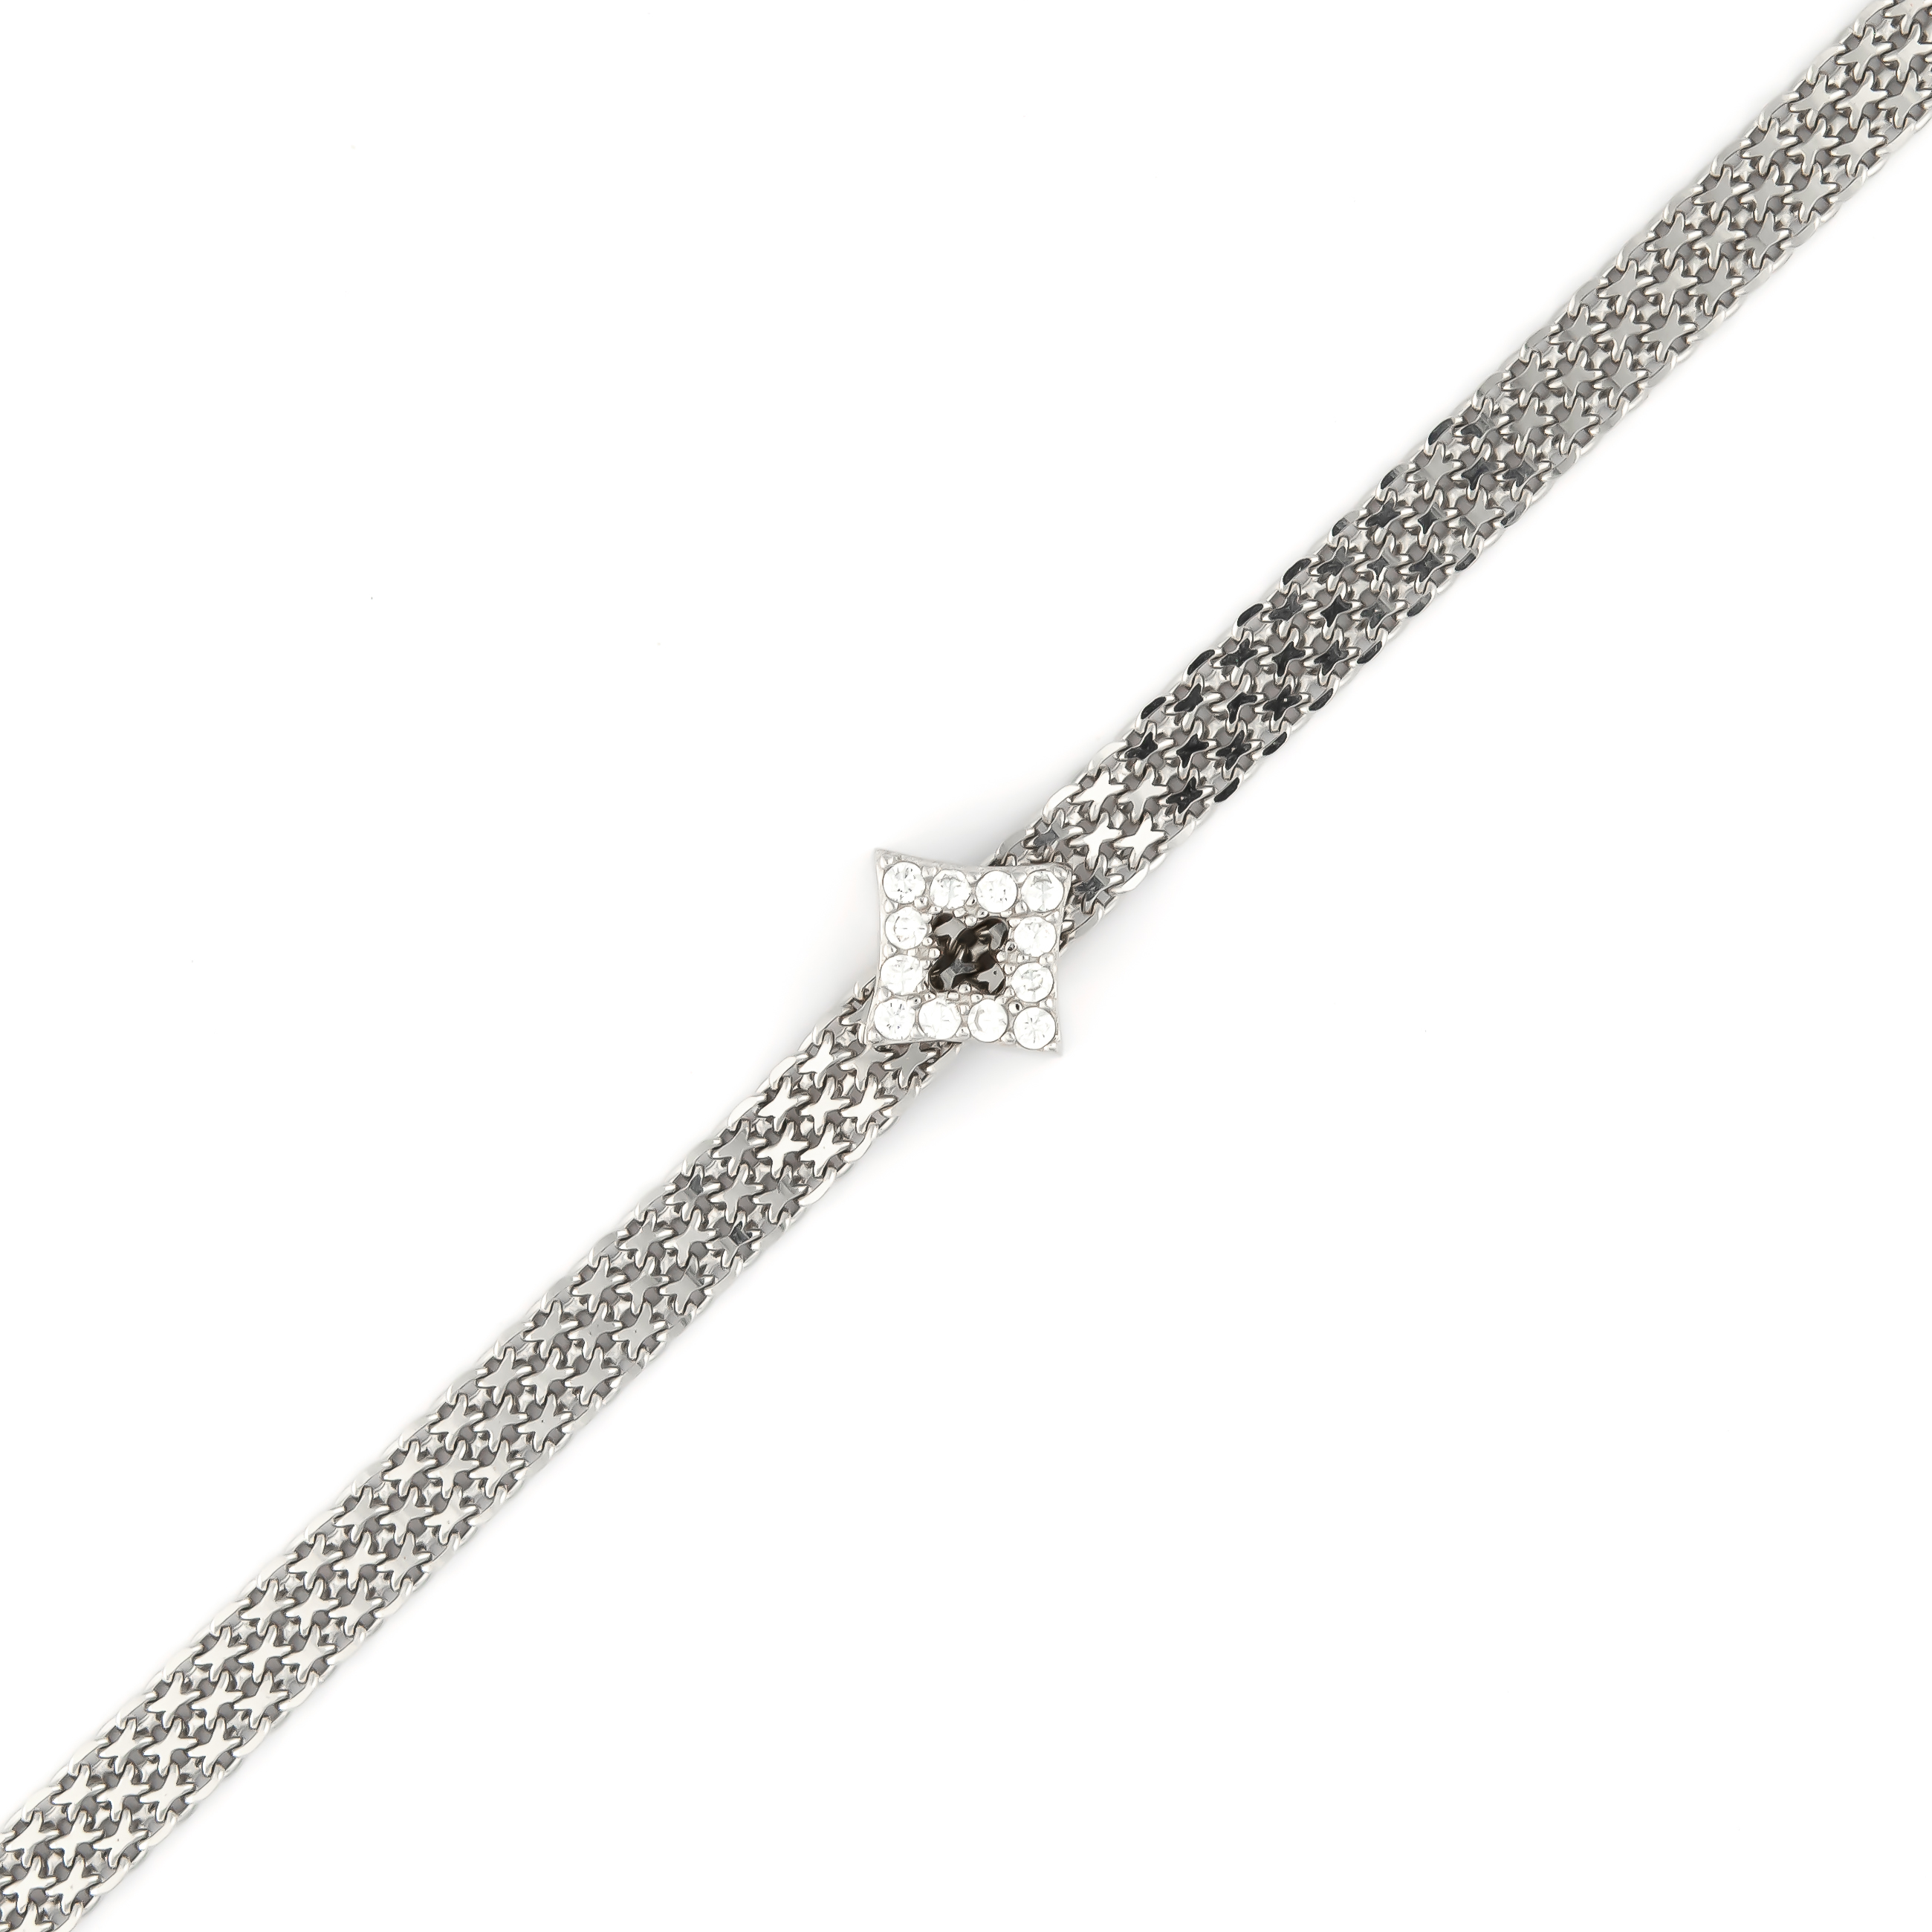 K.V. Fuchs Design Schmuck Damen Silberarmband 925 Sterling Silver in Rautenform mit Zirkonia in weiß »A-49-04«